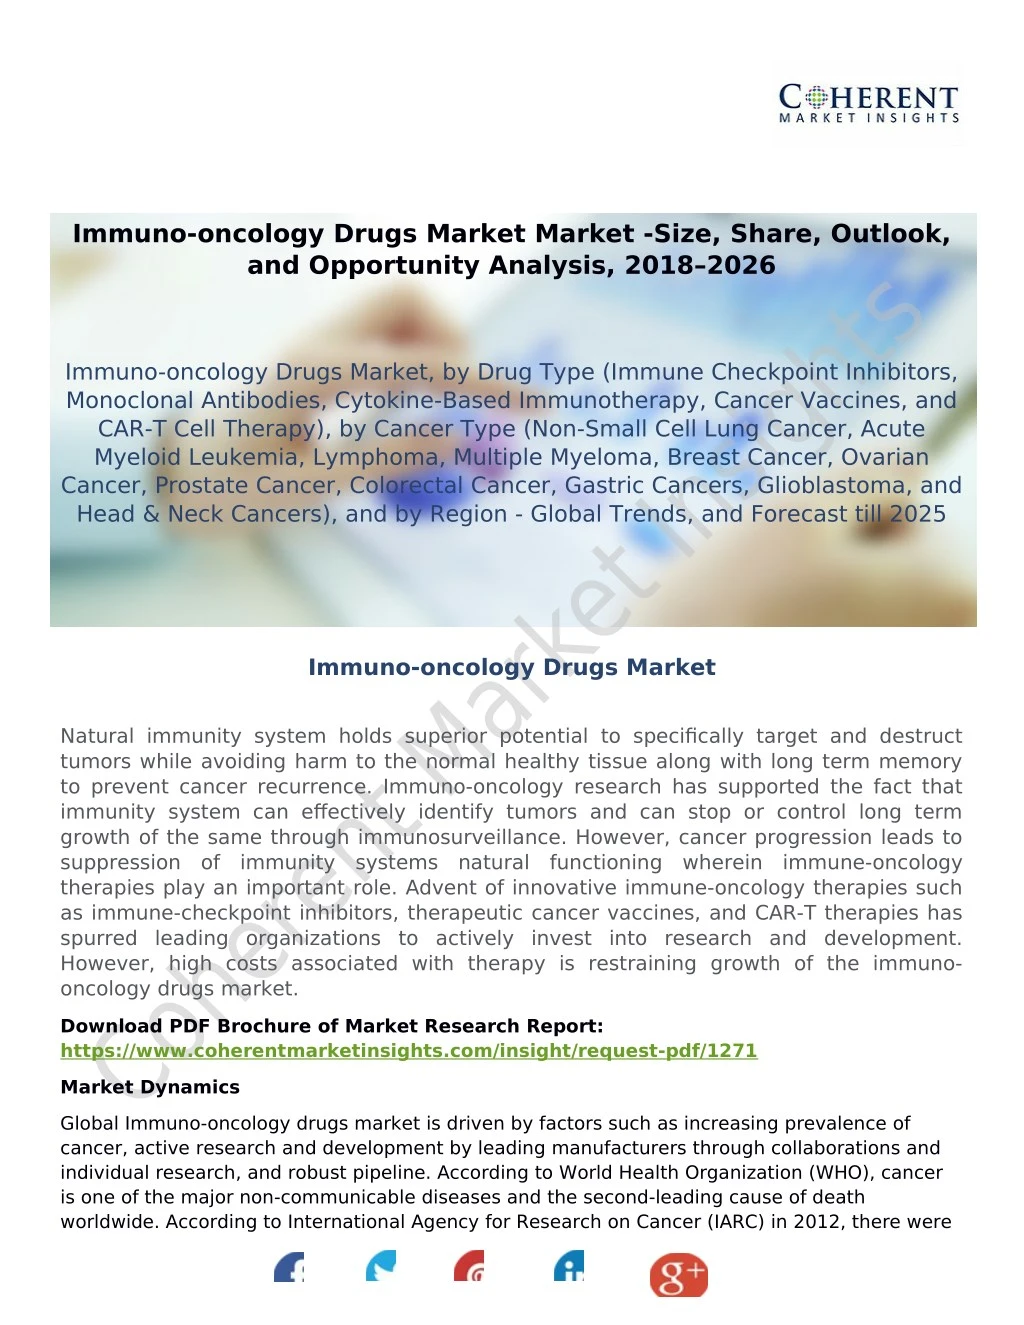 immuno oncology drugs market market size share